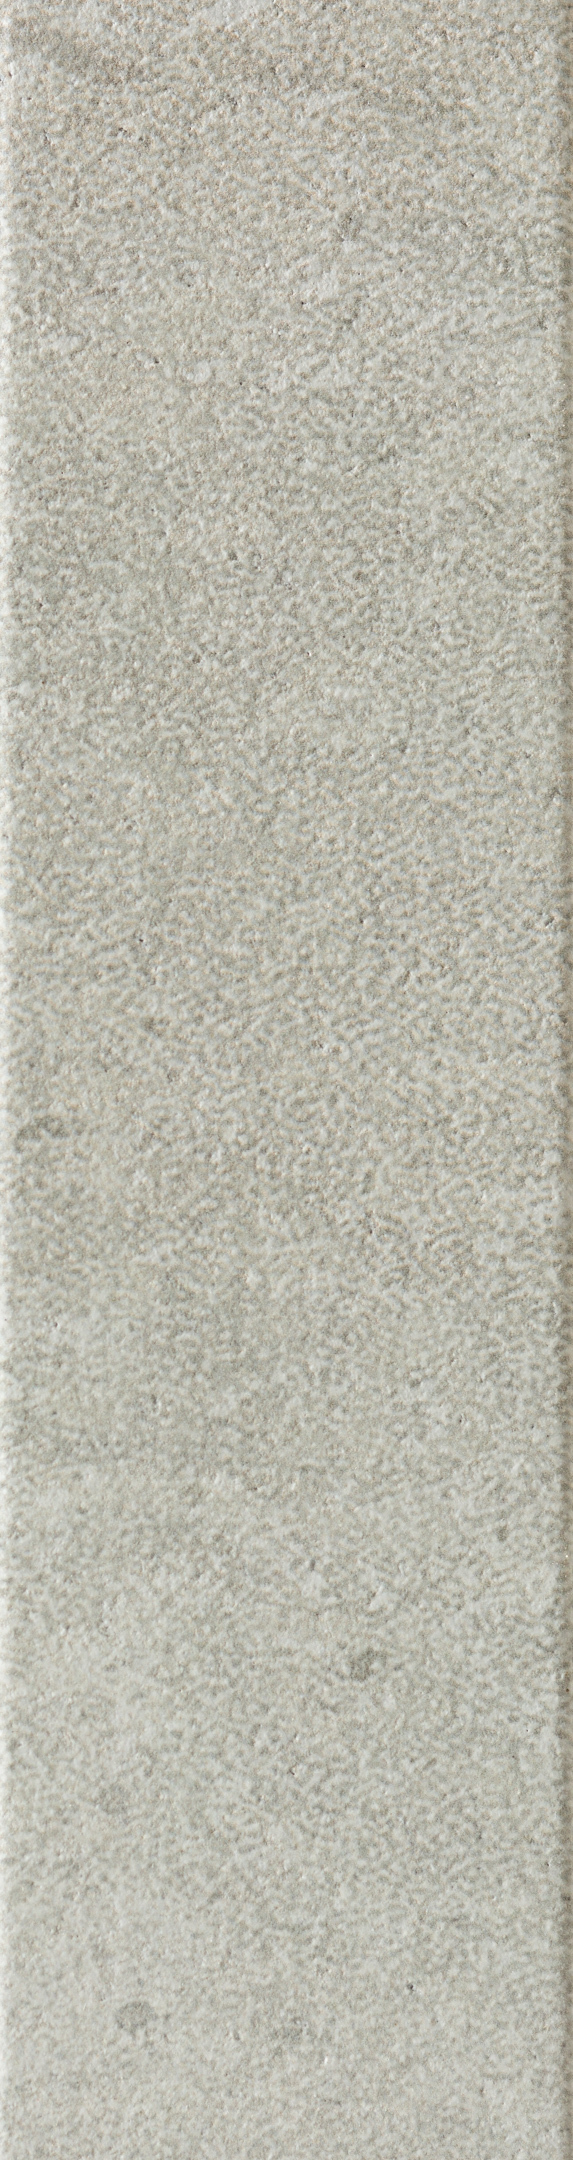 фото Клинкерная плитка керамин юта 1 светло-серая 24,5х6,5 см (34 шт.=0,54 кв.м)